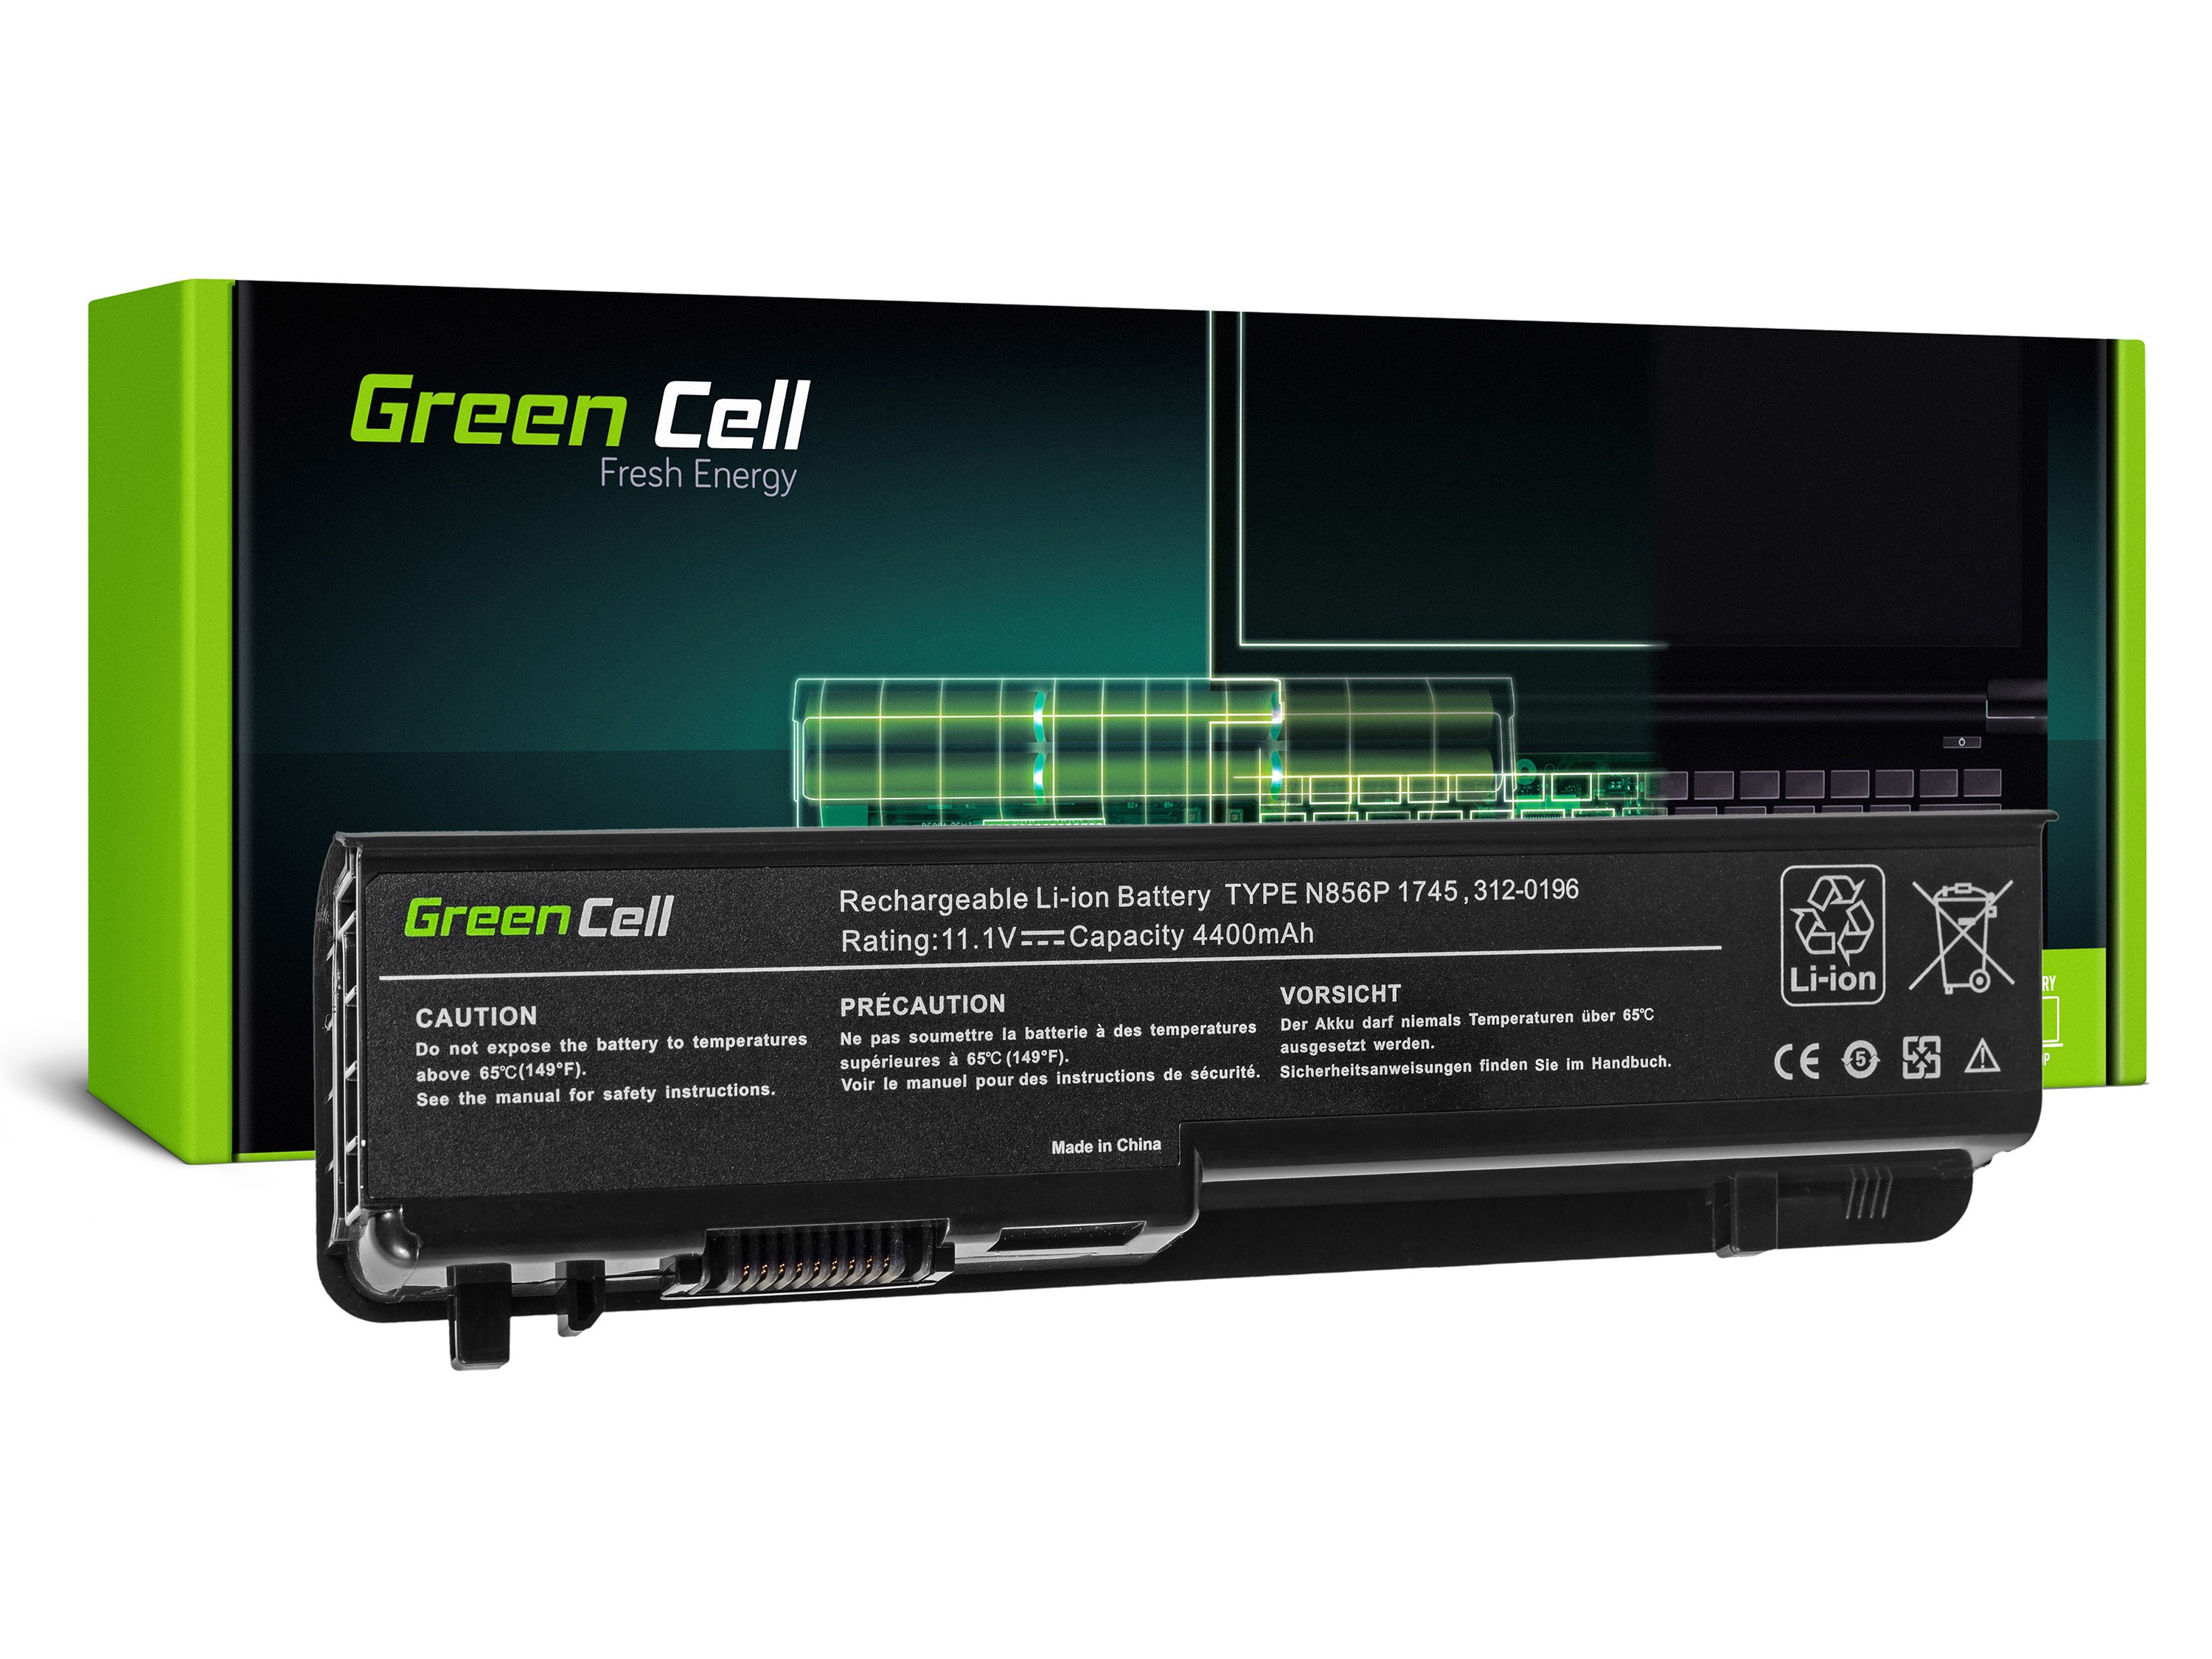 Green Cell DE17 Baterie Dell Studio 17 1745 1747 1749 4400mAh Li-ion